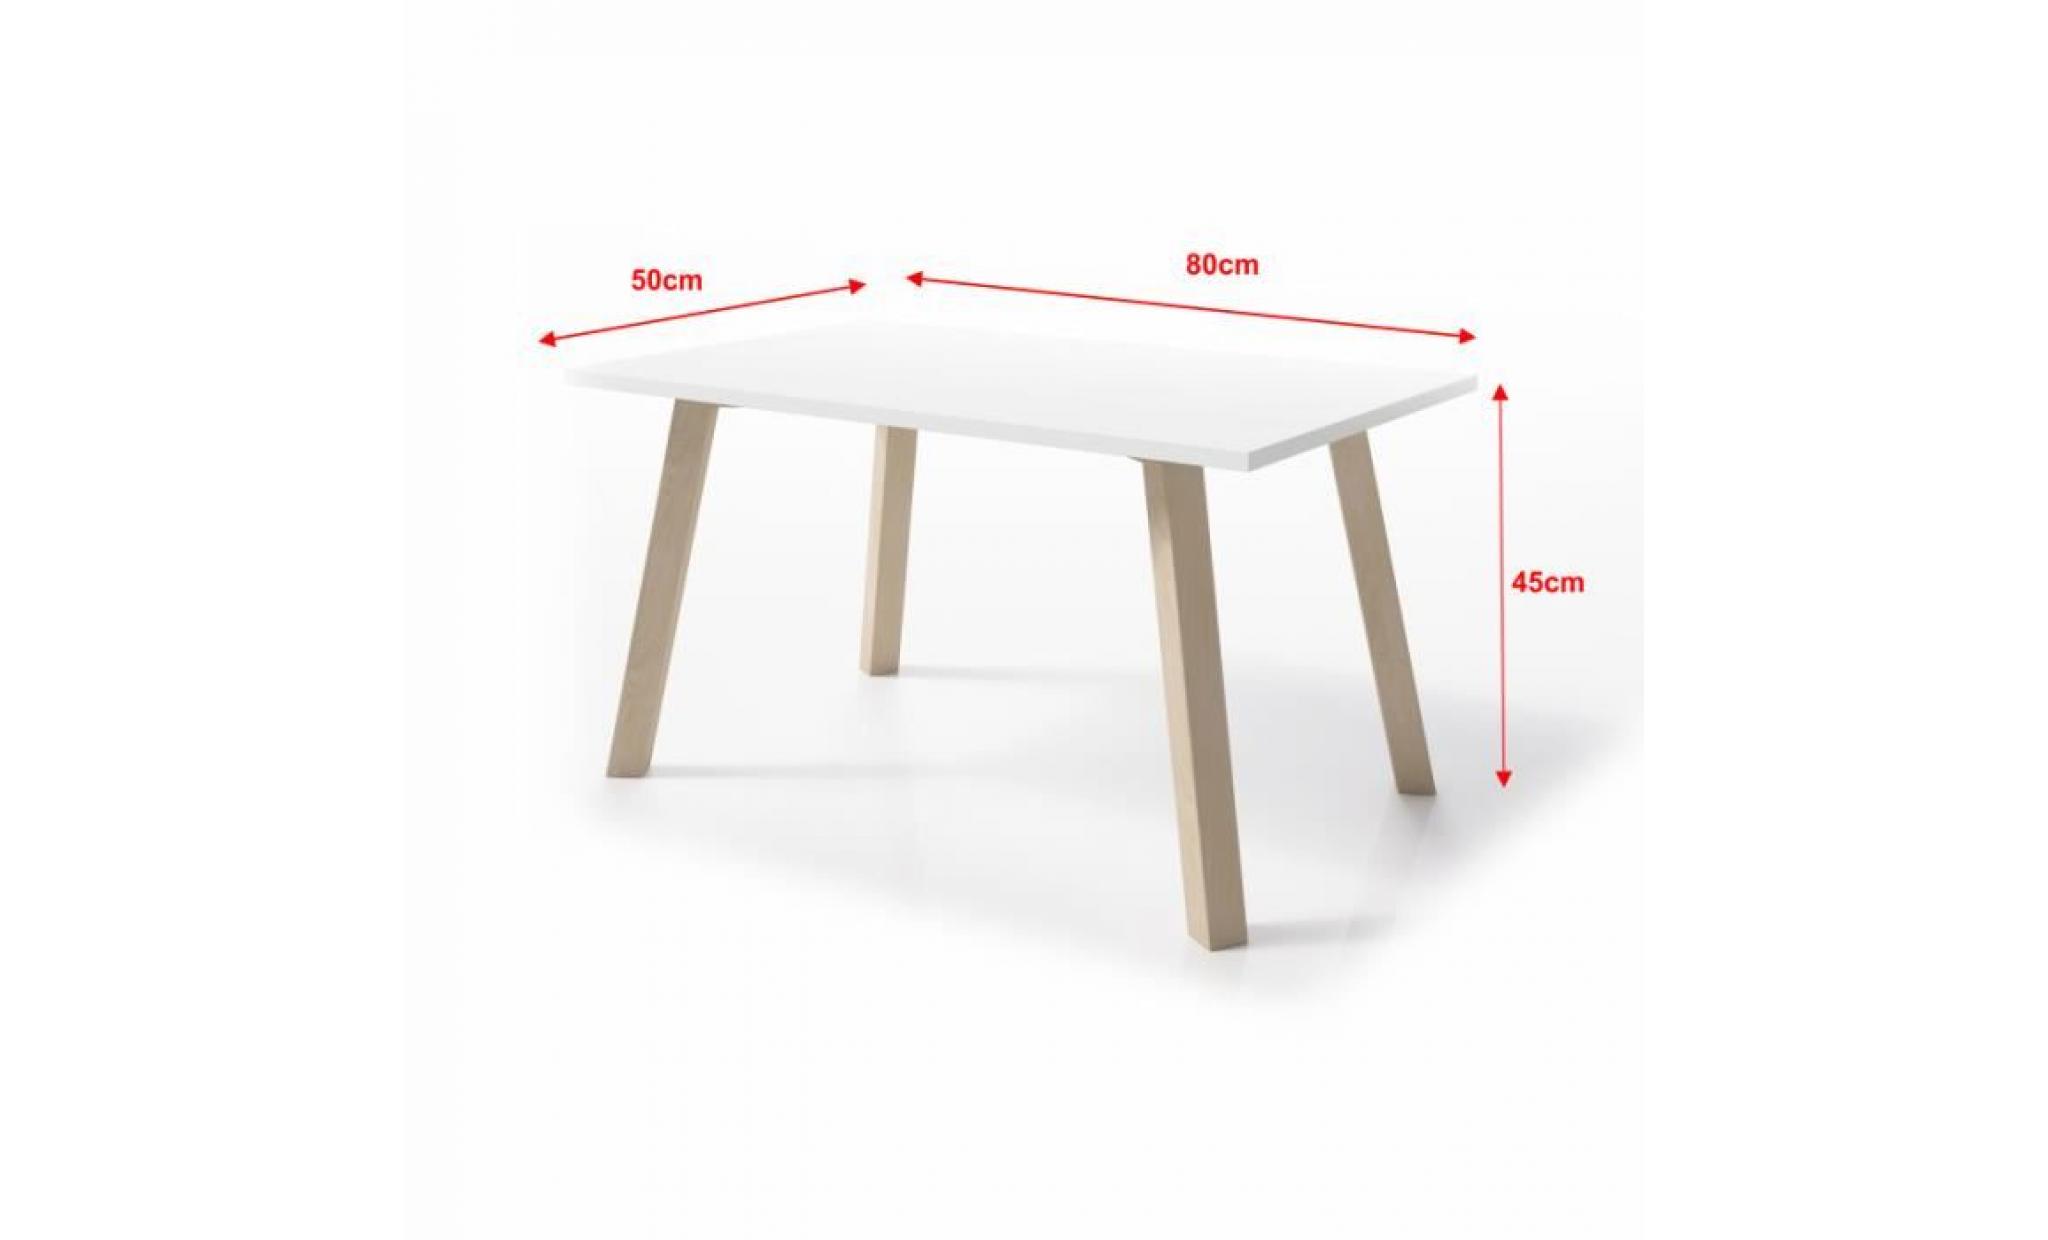 table basse / table scandinave   passa   80 cm   blanc mat   pieds en bois de hêtre   style scandinave   style minimaliste pas cher